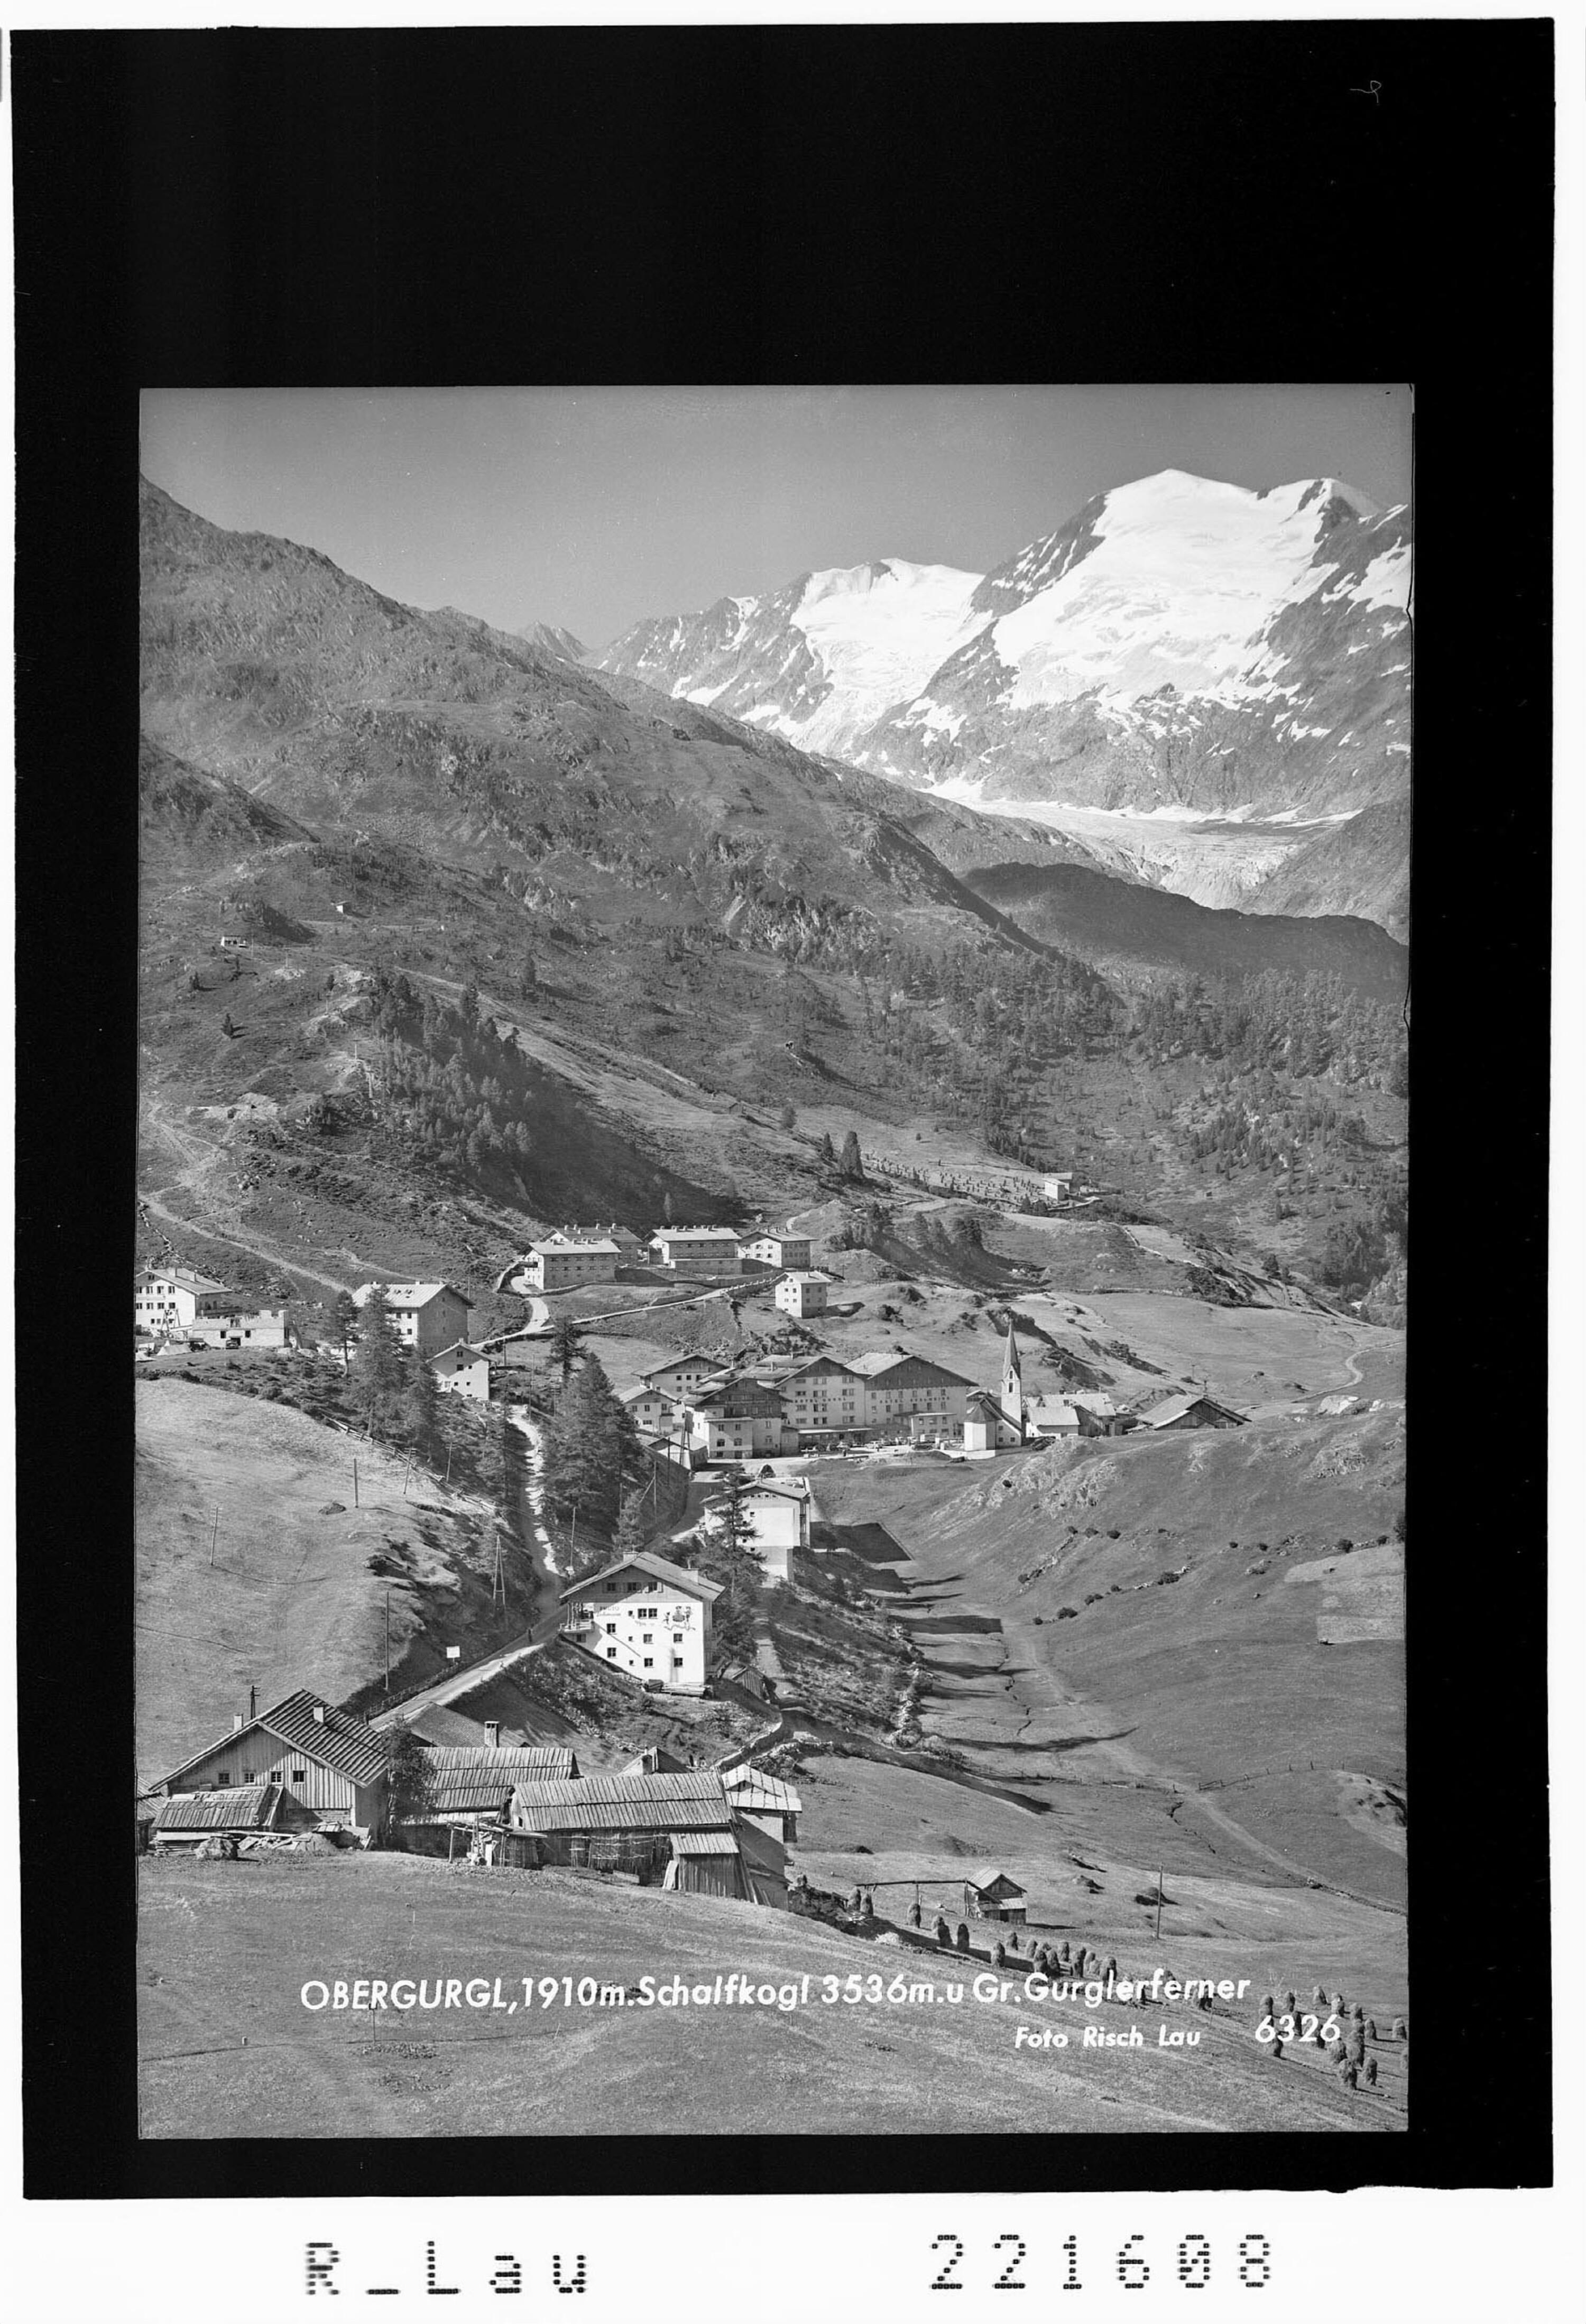 Obergurgl 1910 m mit Schalfkogl 3536 m und Grosser Gurglerferner></div>


    <hr>
    <div class=